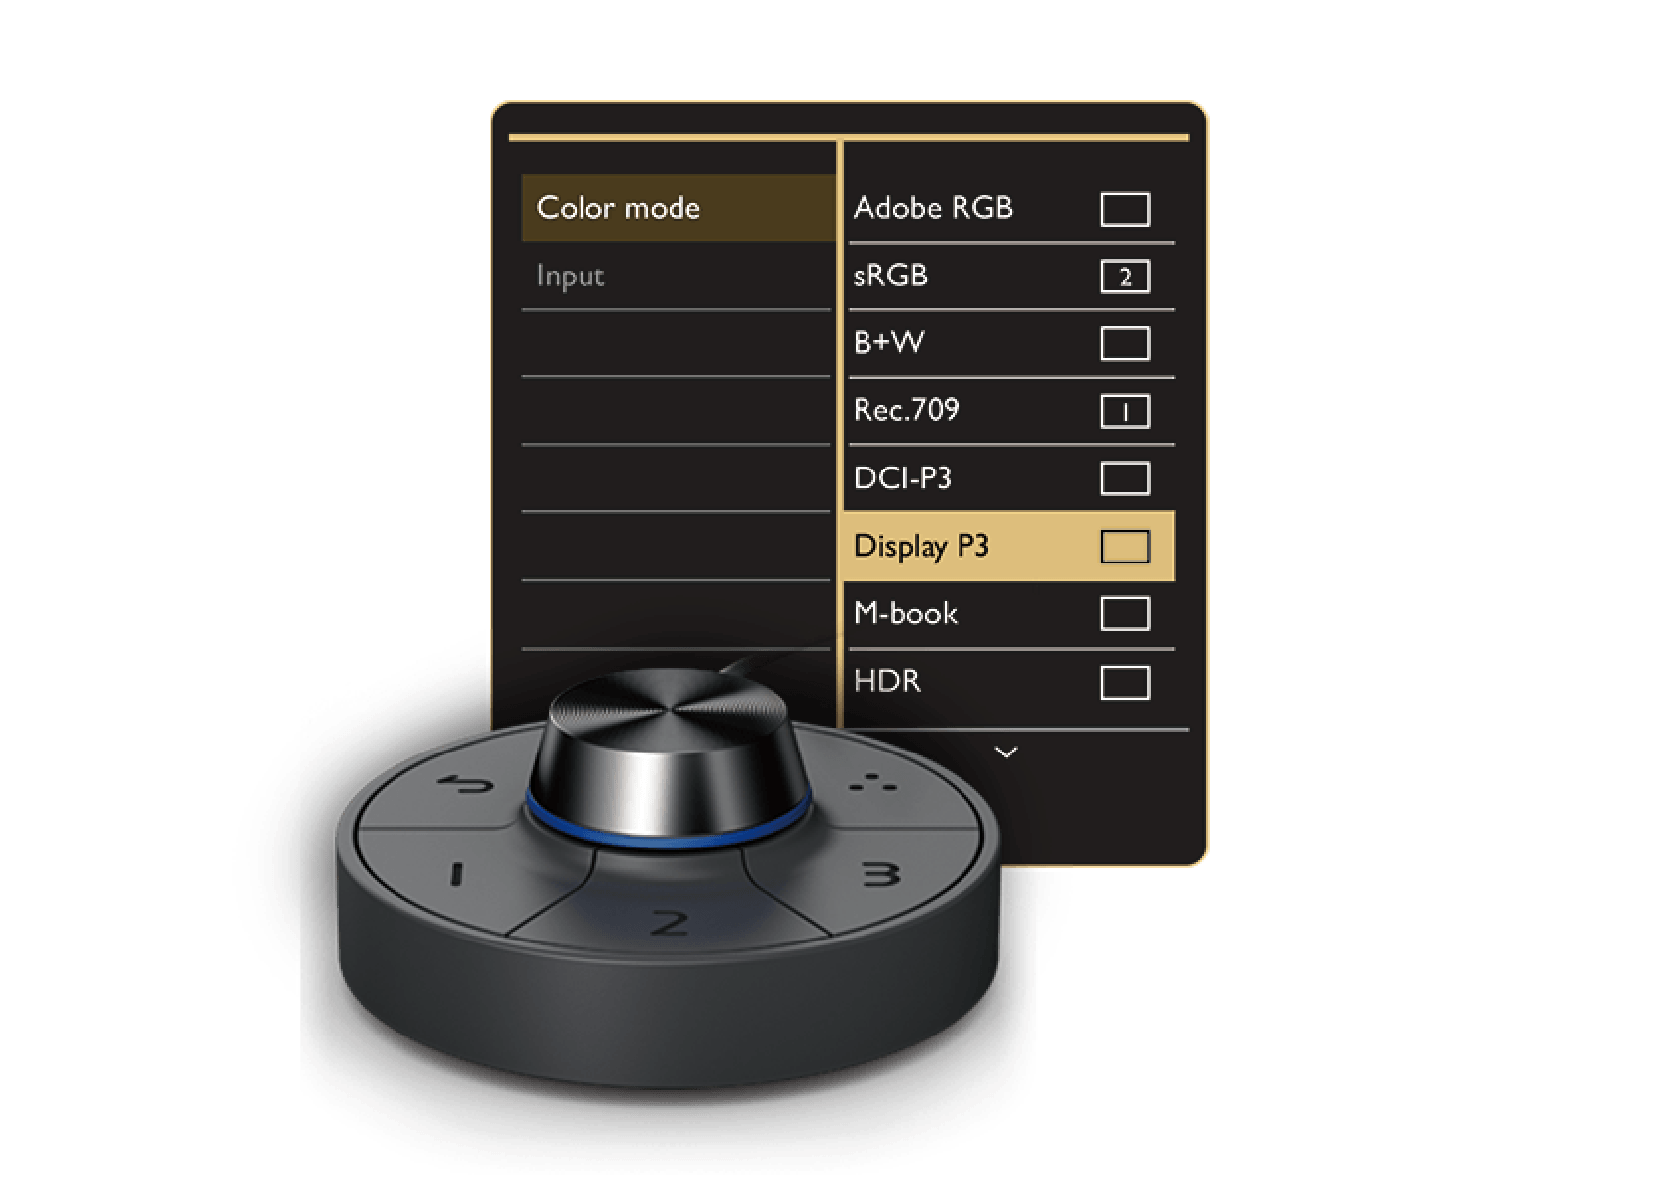 Utilizza Hotkey Puck G2 del Photographer Monitor BenQ per accedere alle modalità e alle funzioni colore preferite utilizzando questi tasti di scelta rapida preimpostati.